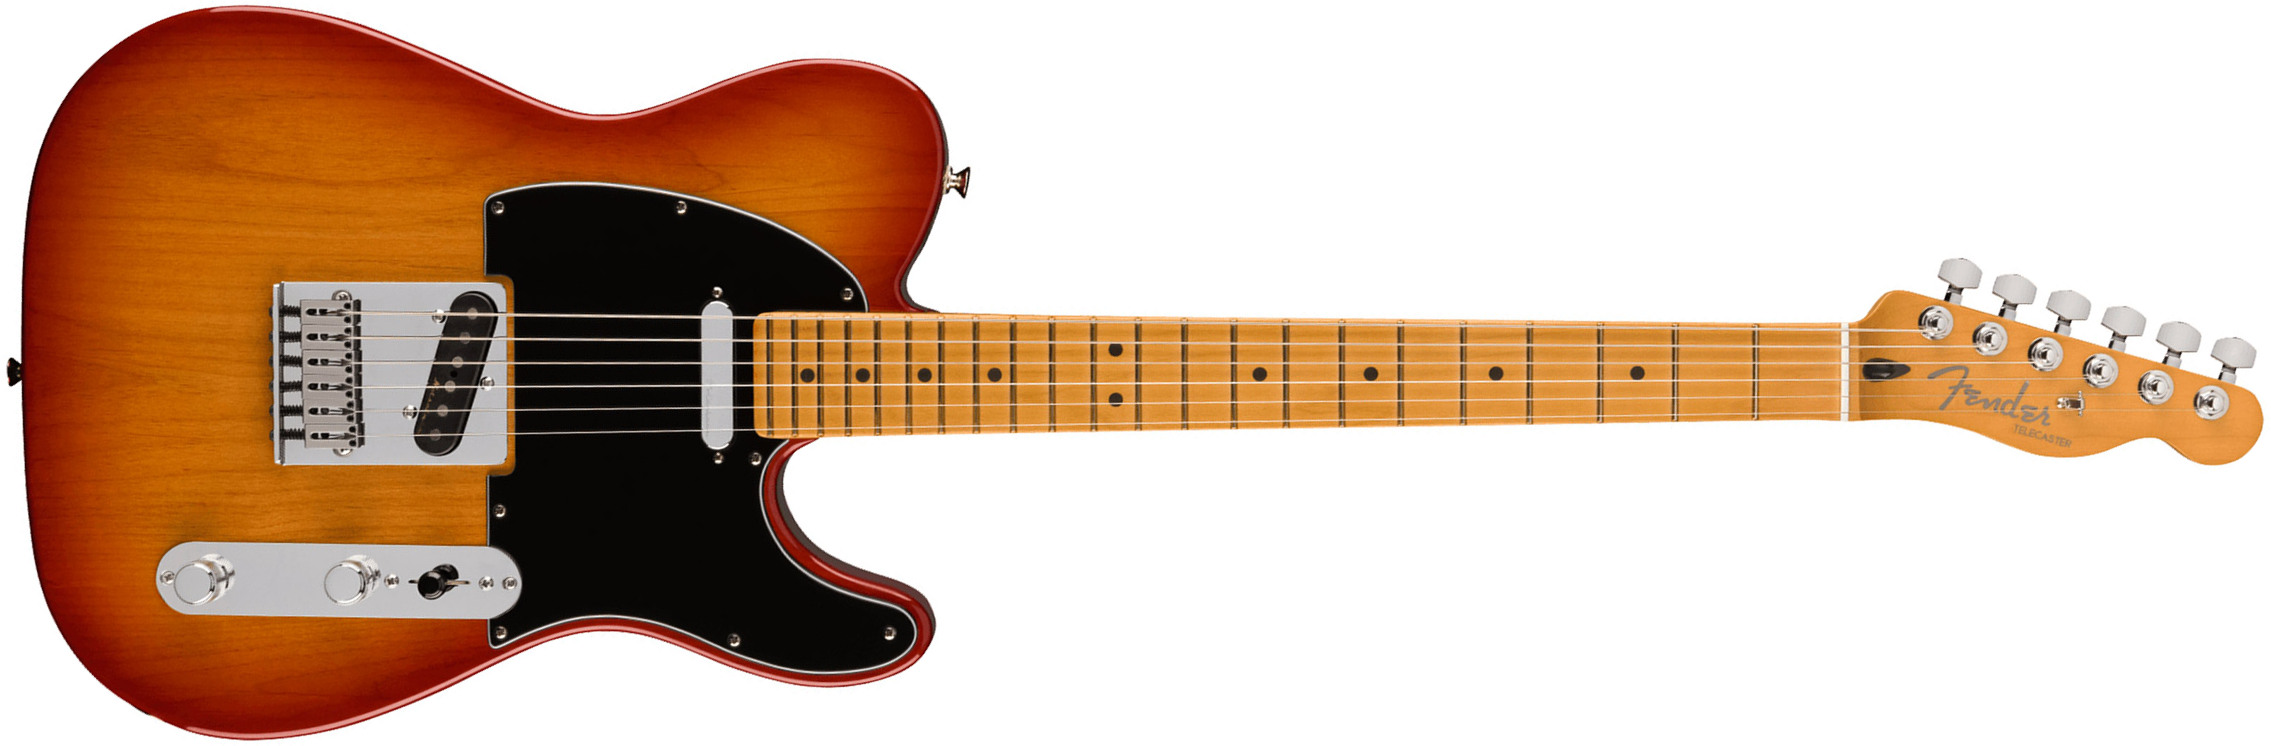 Fender Tele Player Plus Mex 2023 2s Ht Mn - Sienna Sunburst - Guitarra eléctrica con forma de tel - Main picture